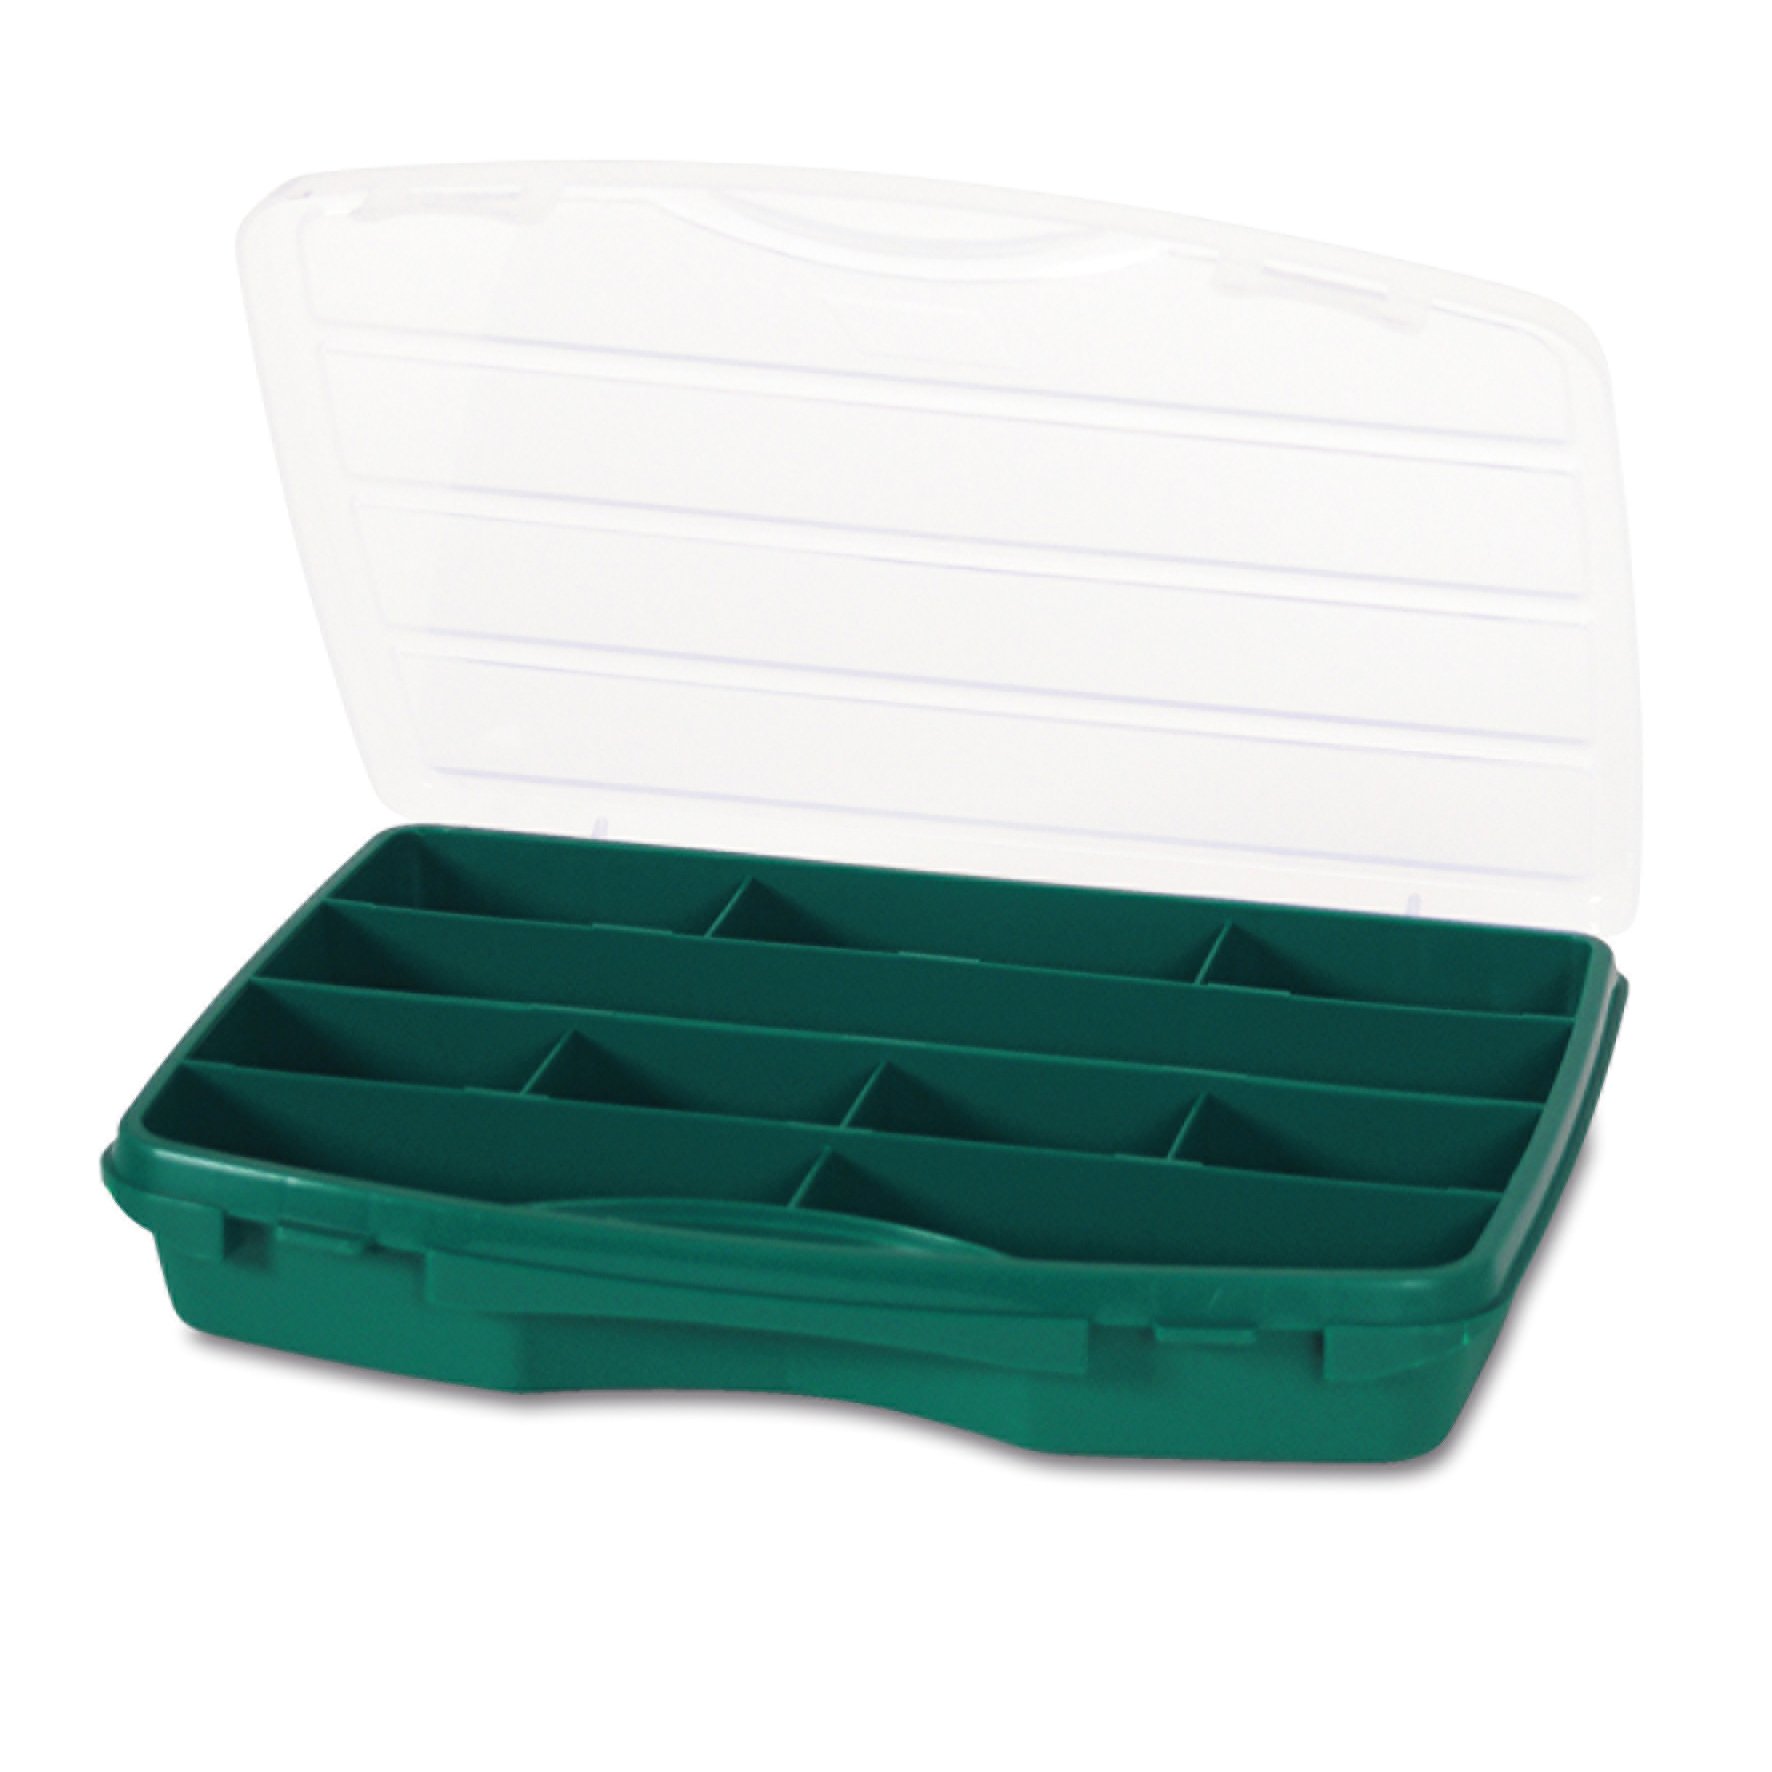 Органайзер Tayg Box 21-10 Estuche, для зберігання дрібних предметів, 25,6х19,2х4,2 см, зелений (021008) - фото 1